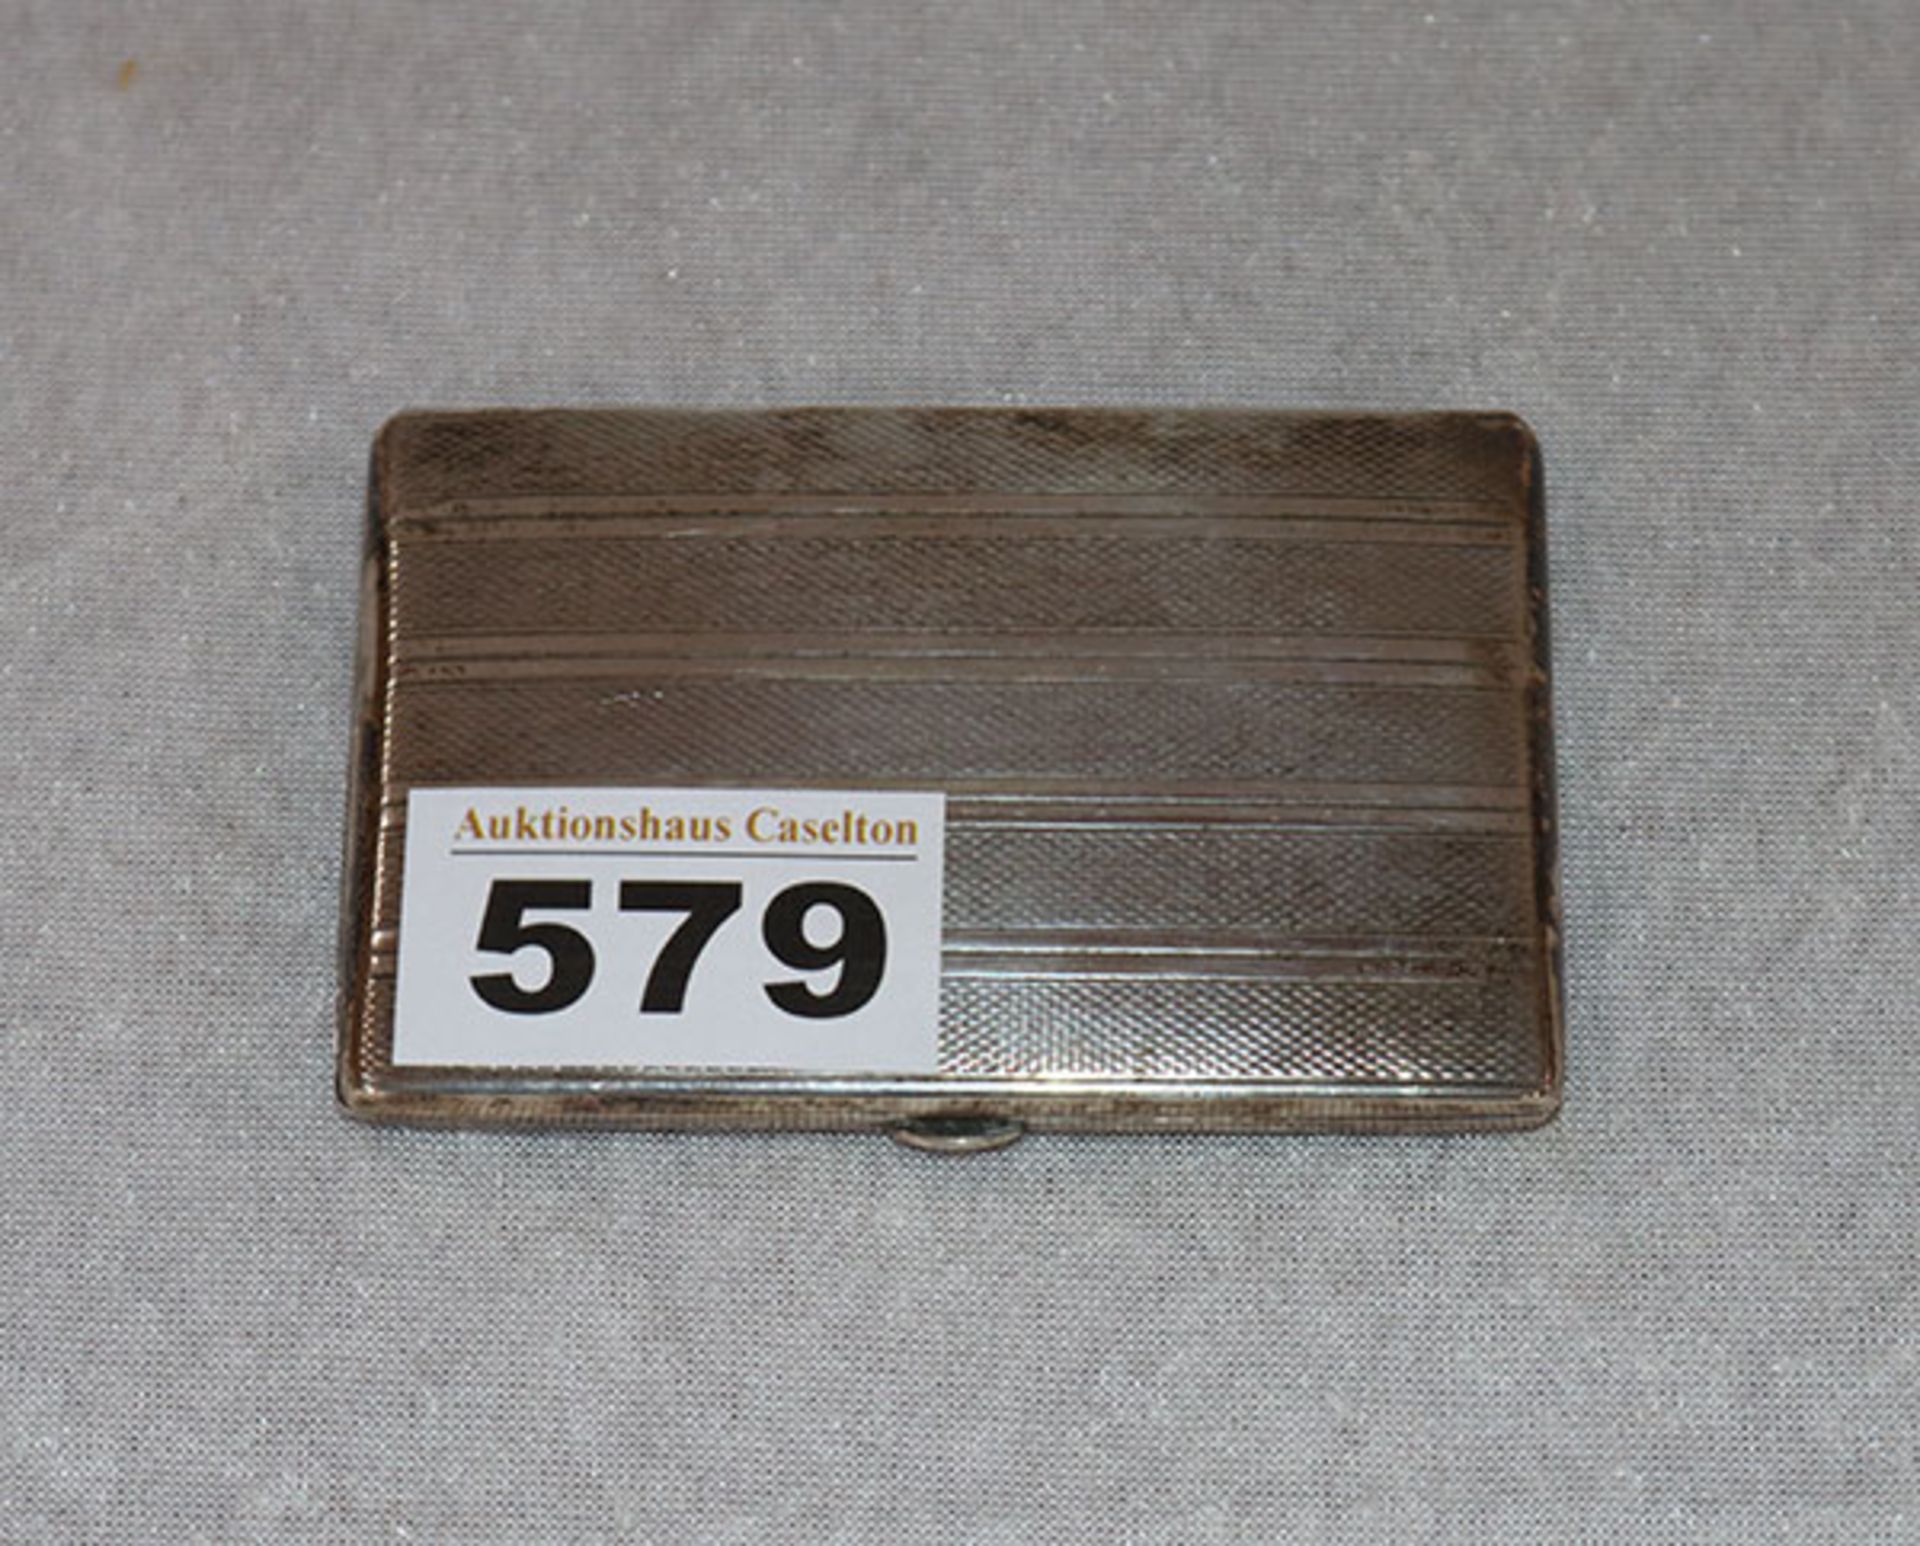 Etui, 835 Silber, 84 gr., außen fein graviert, 8,5 cm x 5,5 cm, Gebrauchsspuren